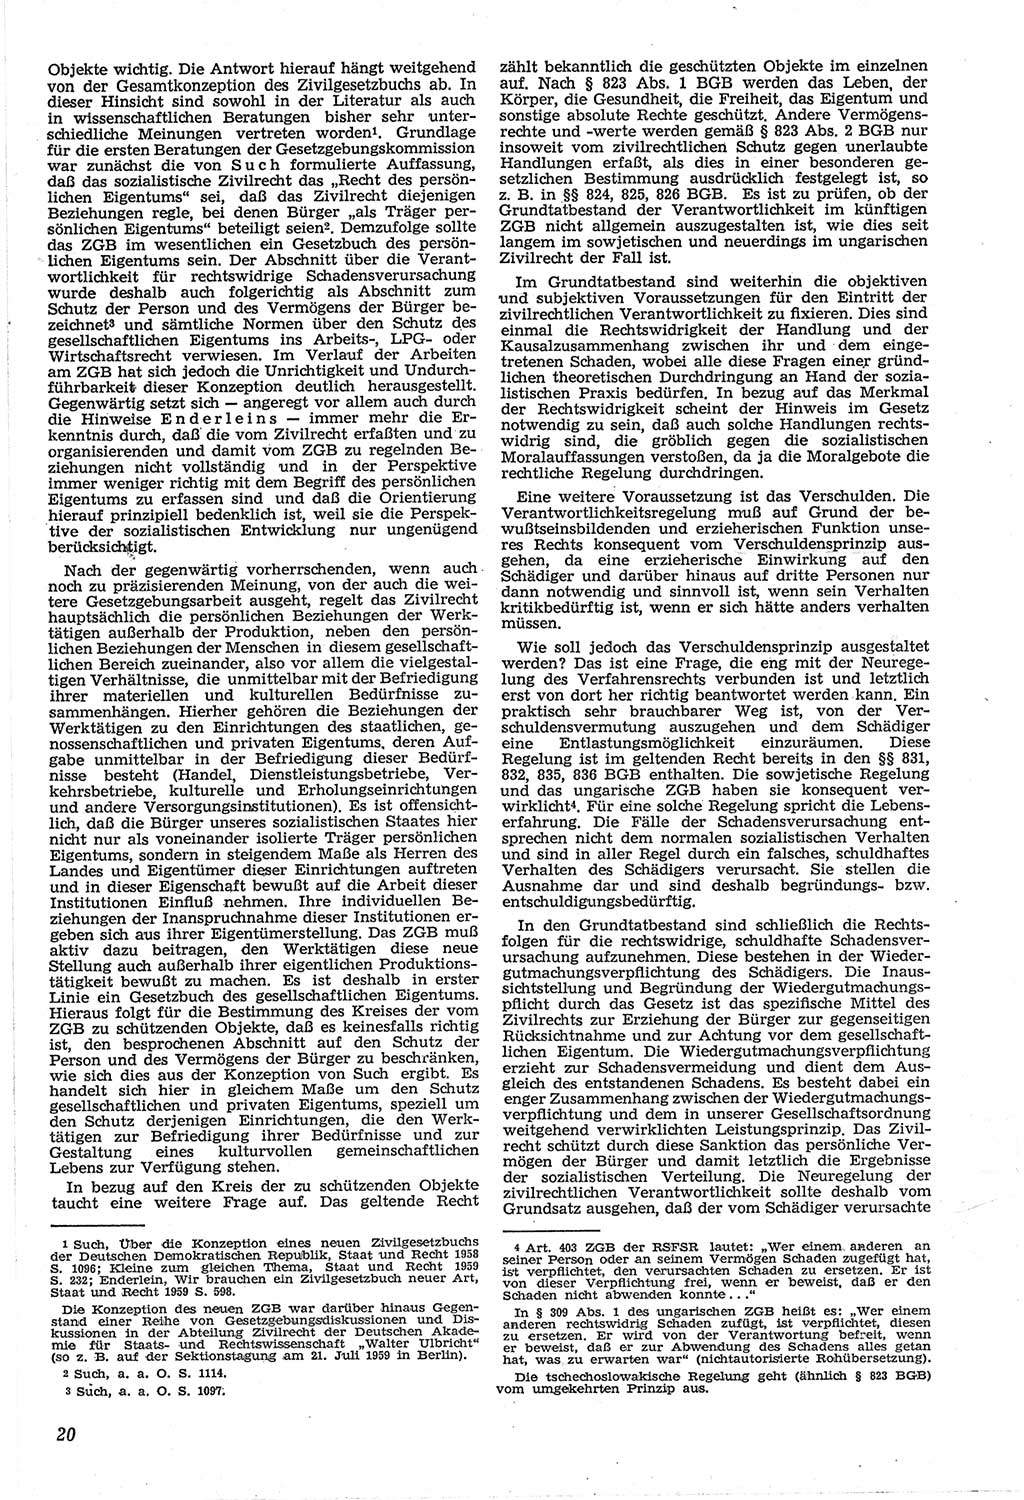 Neue Justiz (NJ), Zeitschrift für Recht und Rechtswissenschaft [Deutsche Demokratische Republik (DDR)], 14. Jahrgang 1960, Seite 20 (NJ DDR 1960, S. 20)